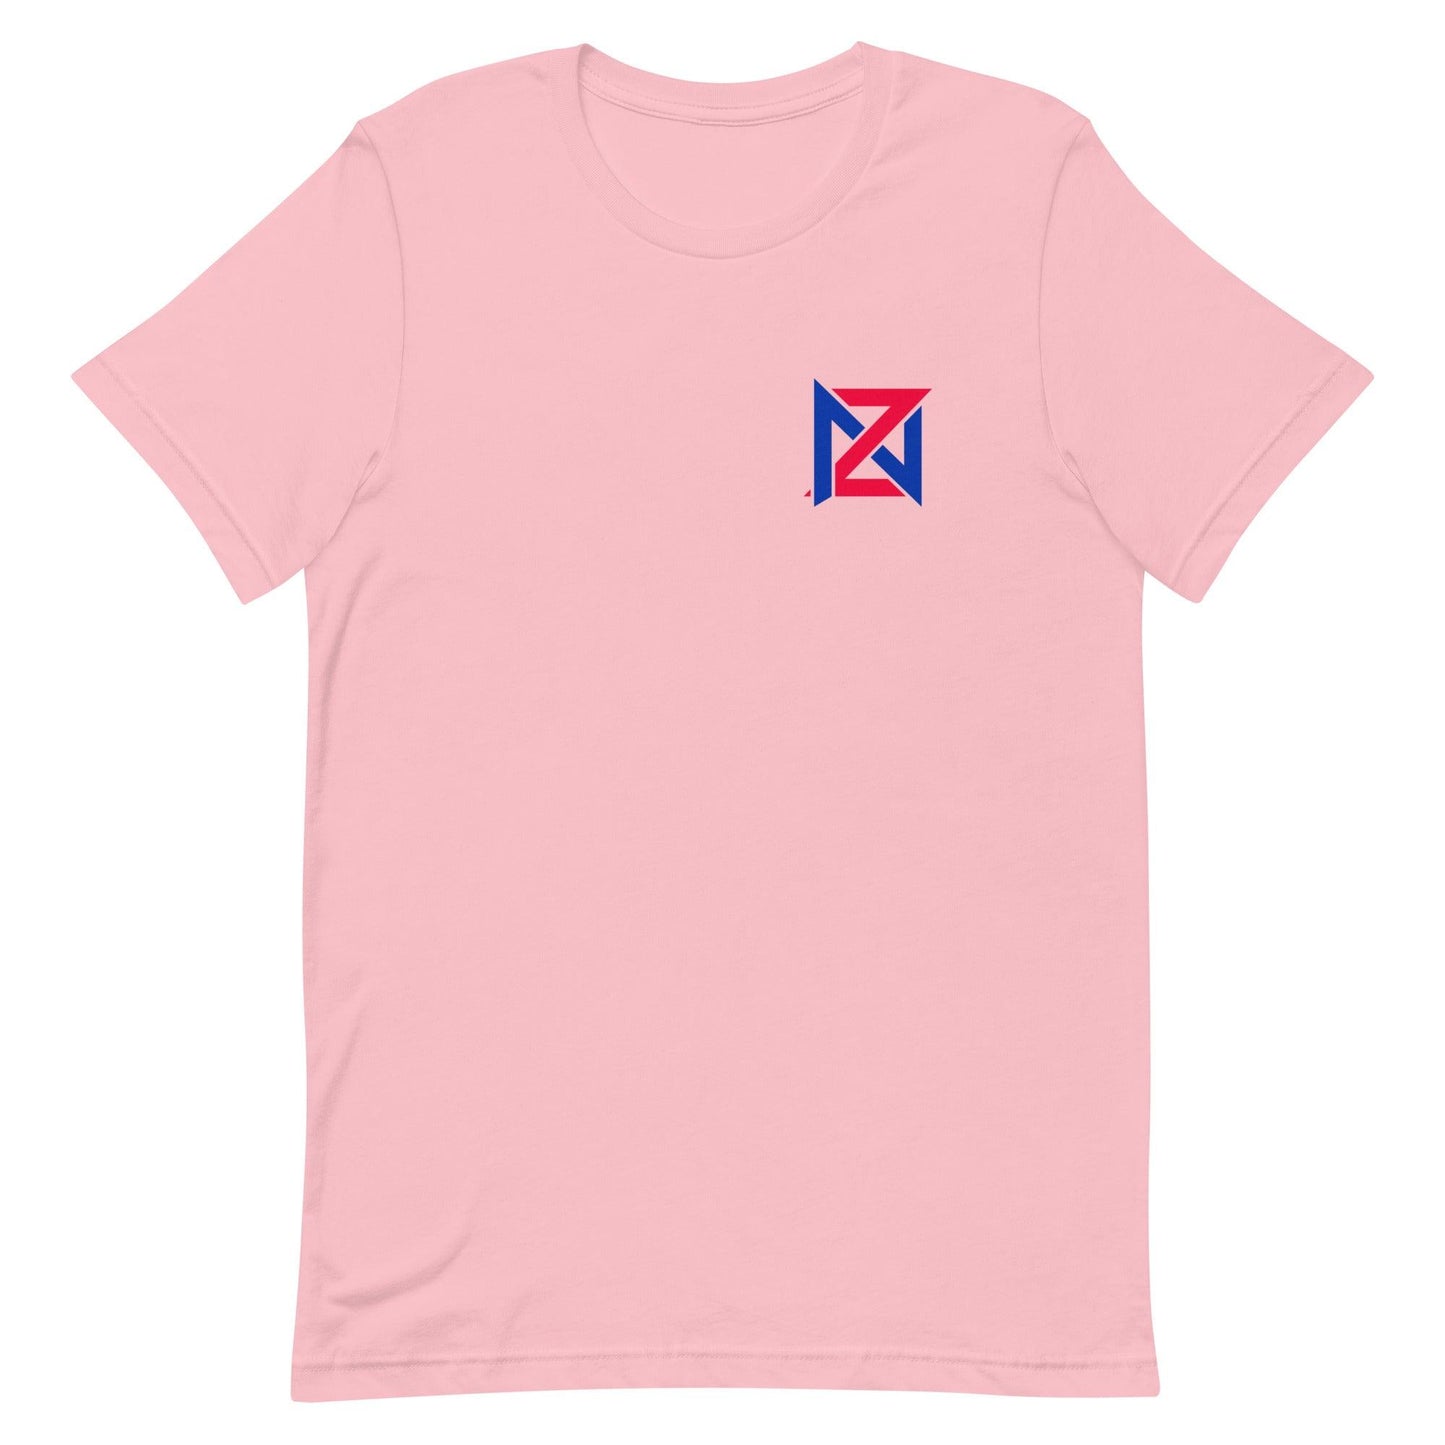 Zach Nutall "Essential" t-shirt - Fan Arch